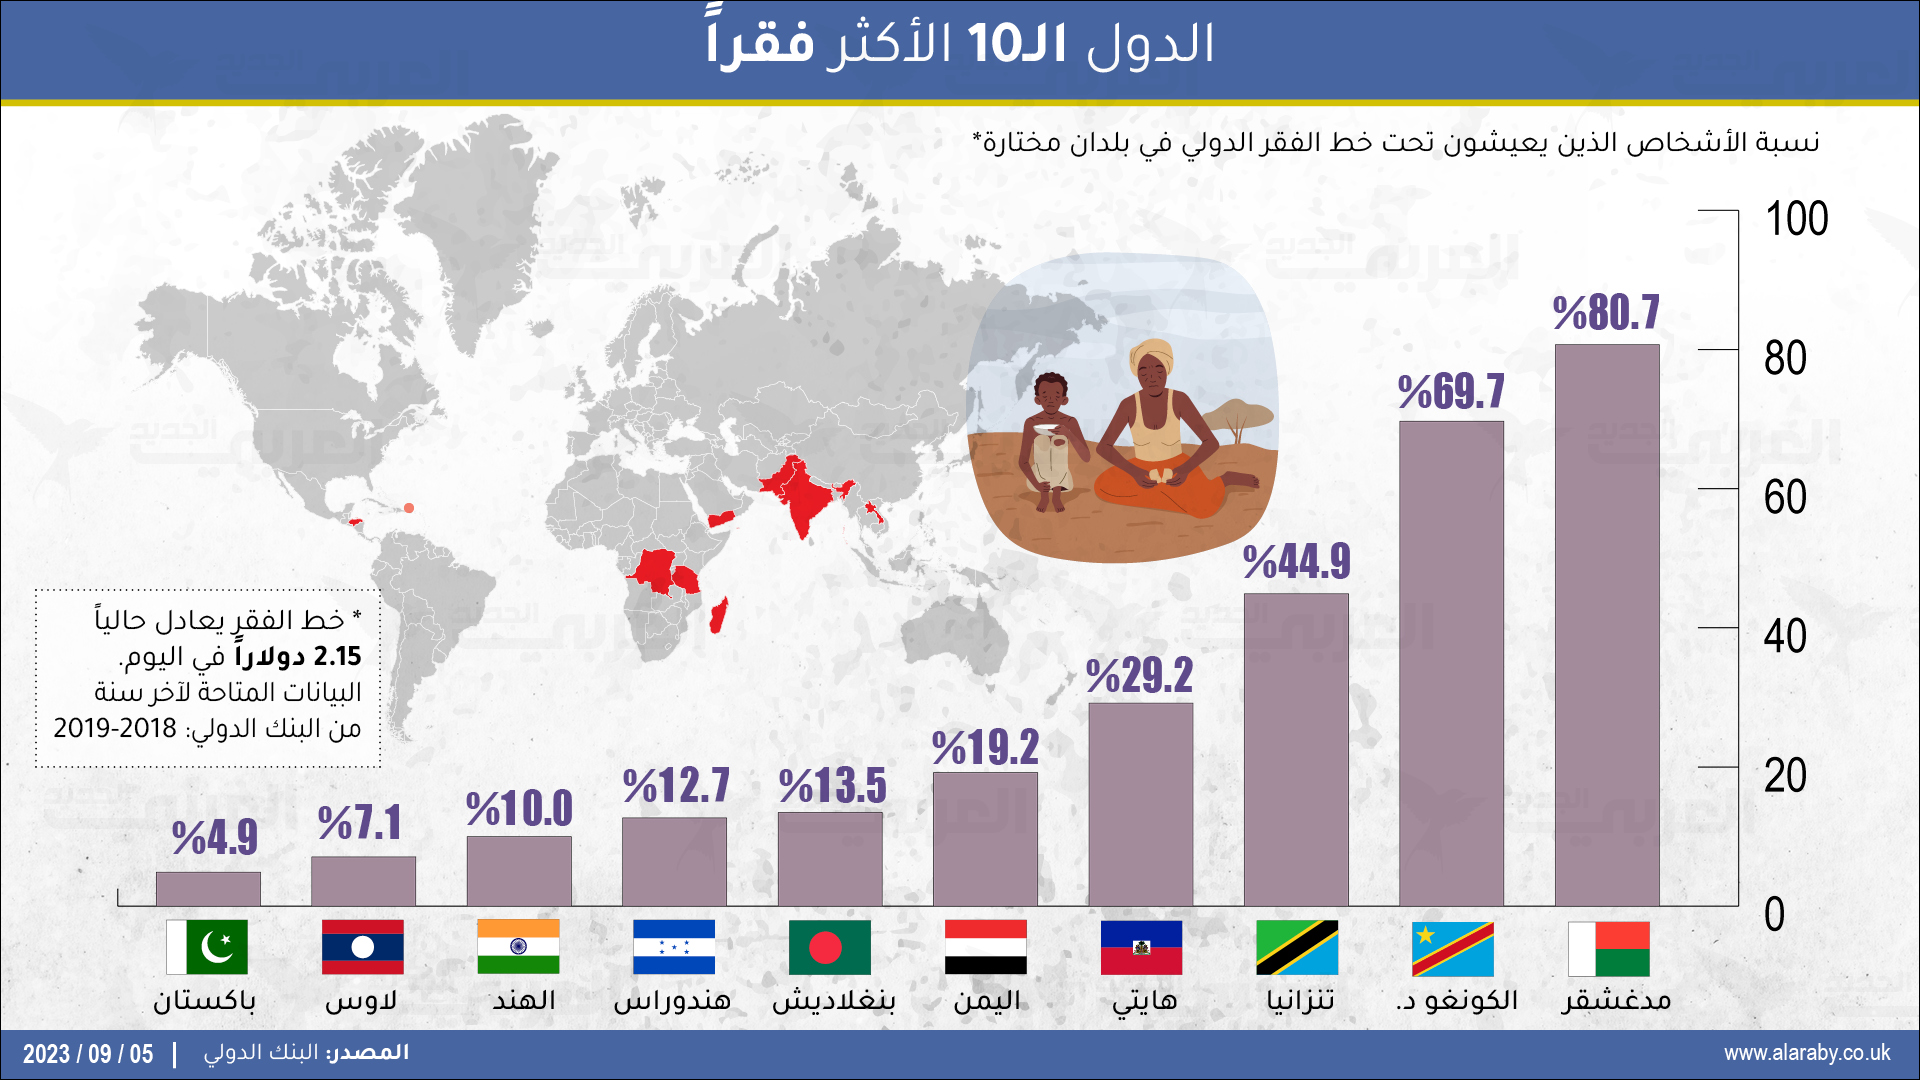 اليمن الدولة العربية الوحيدة في قائمة الدول الـ10 الأكثر فقراً في العالم 